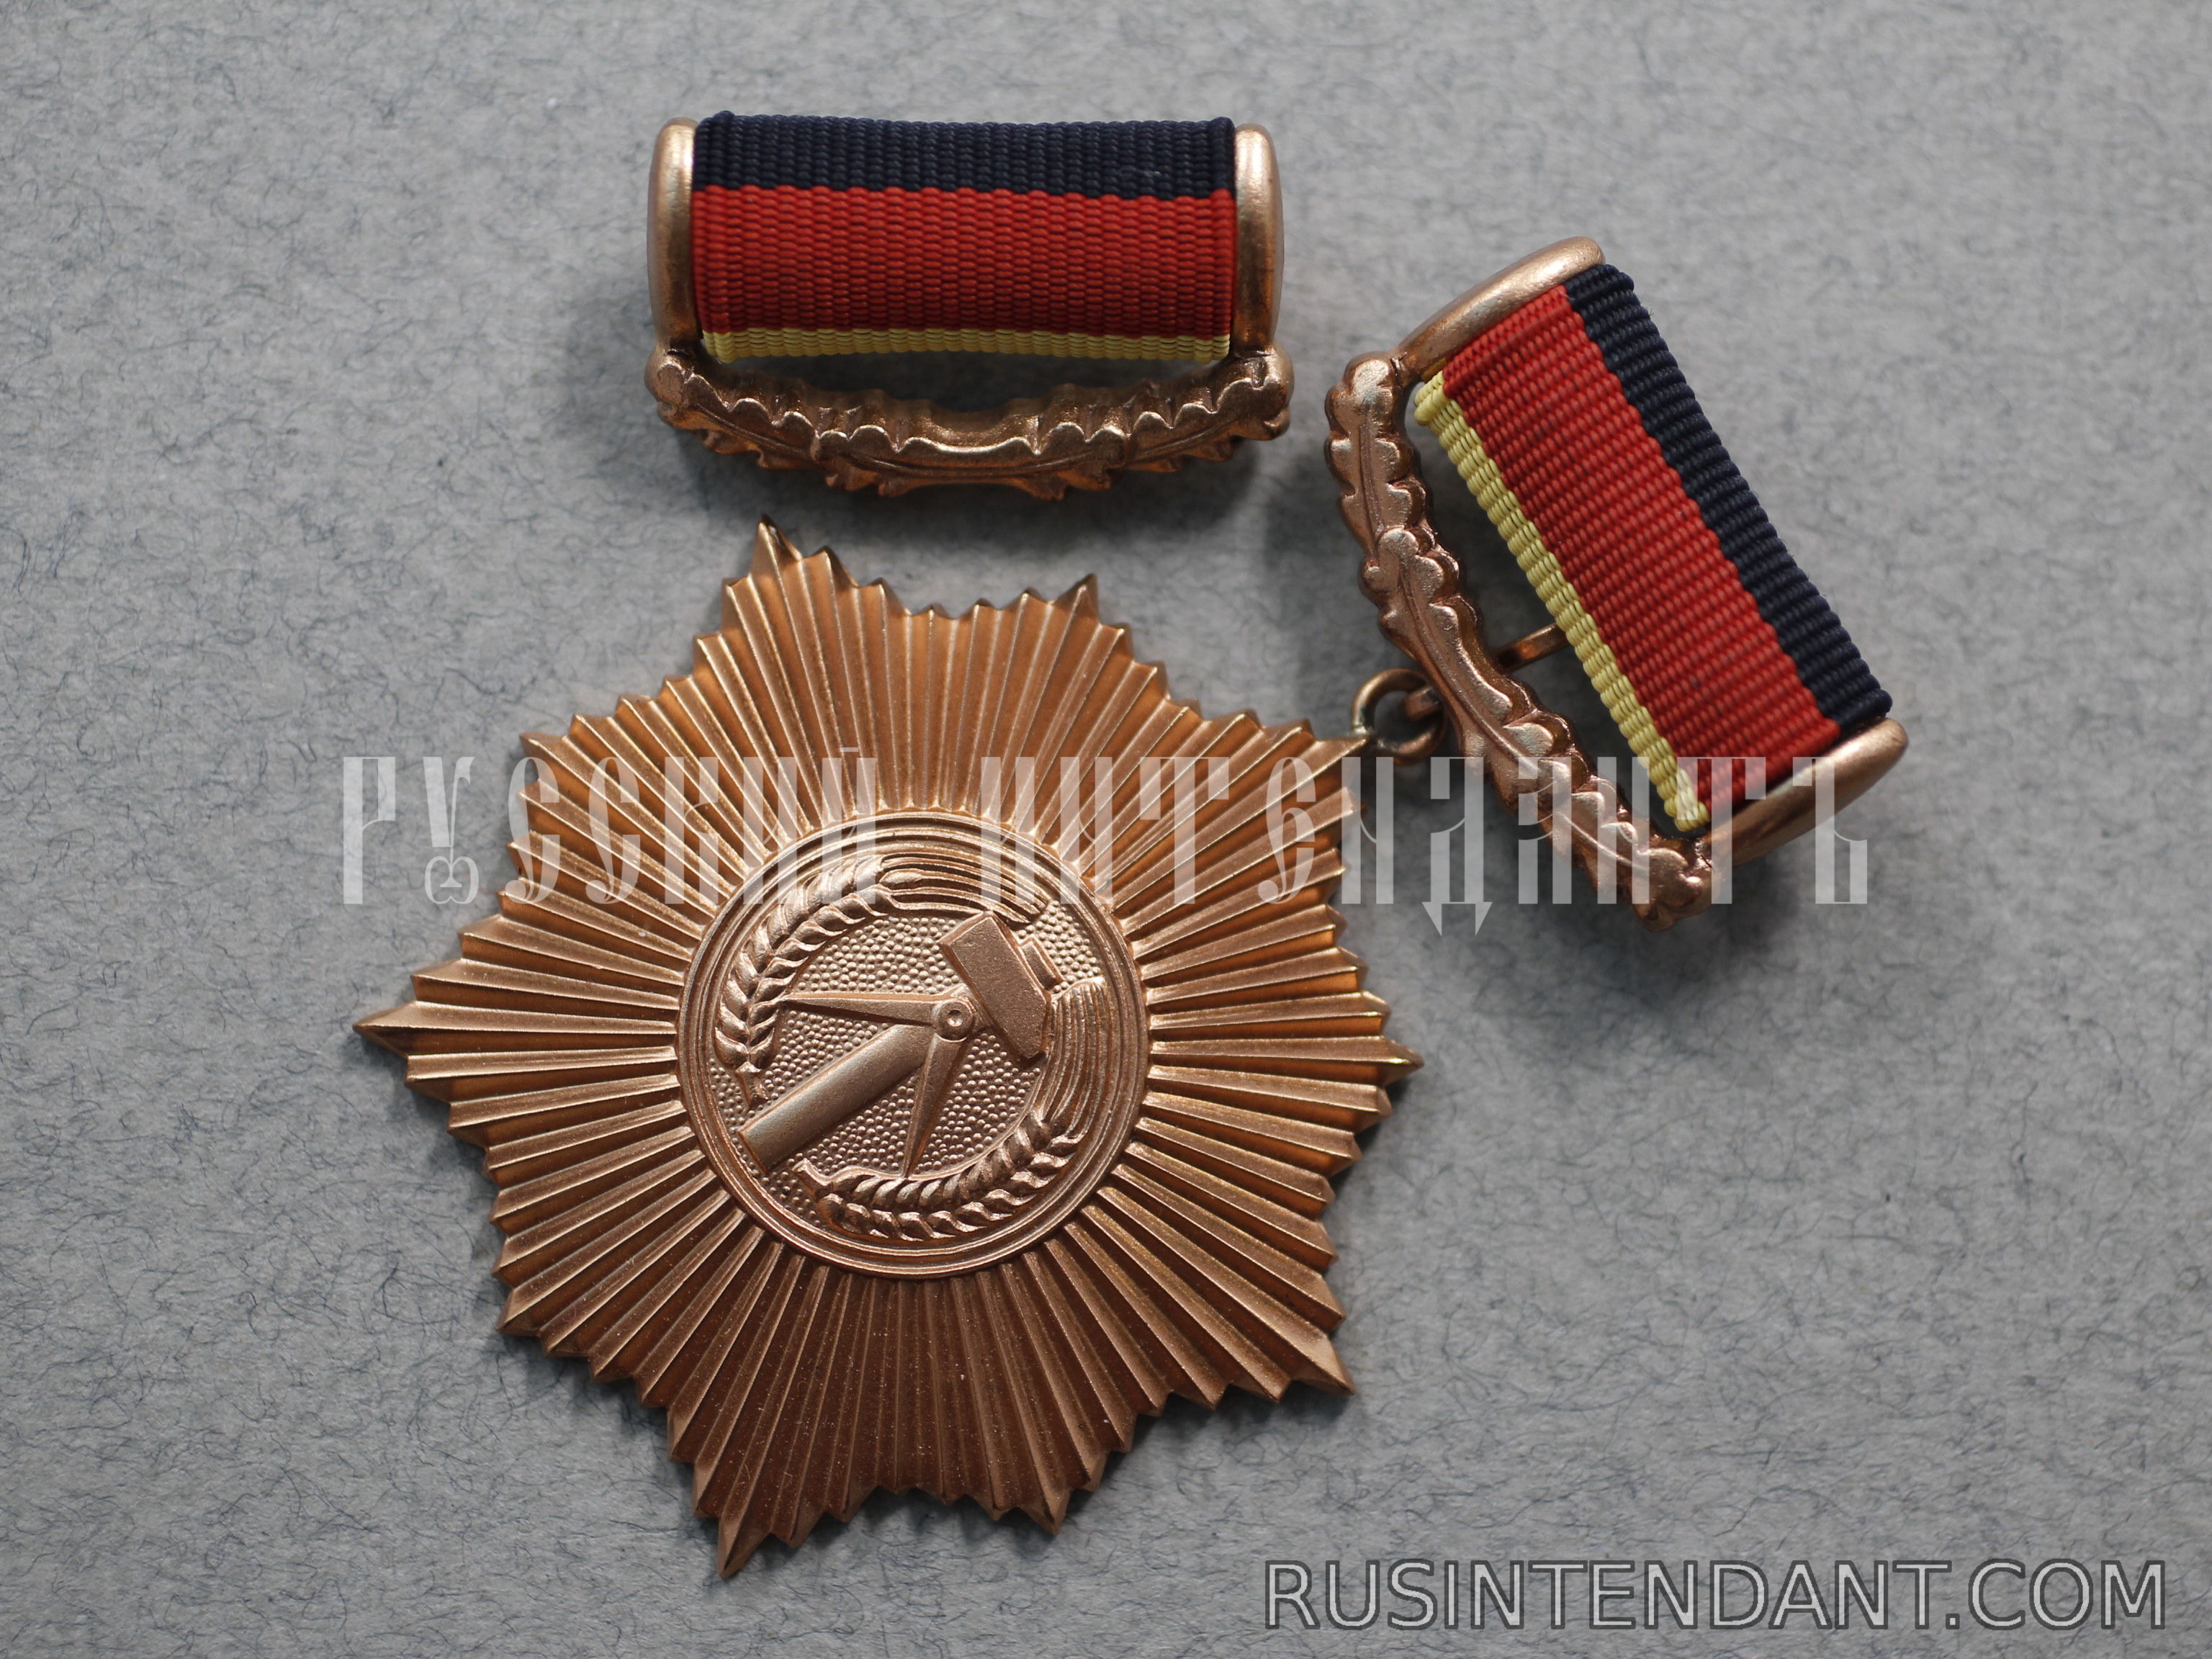 Фото 4: Орден За заслуги перед Отечеством в бронзе 